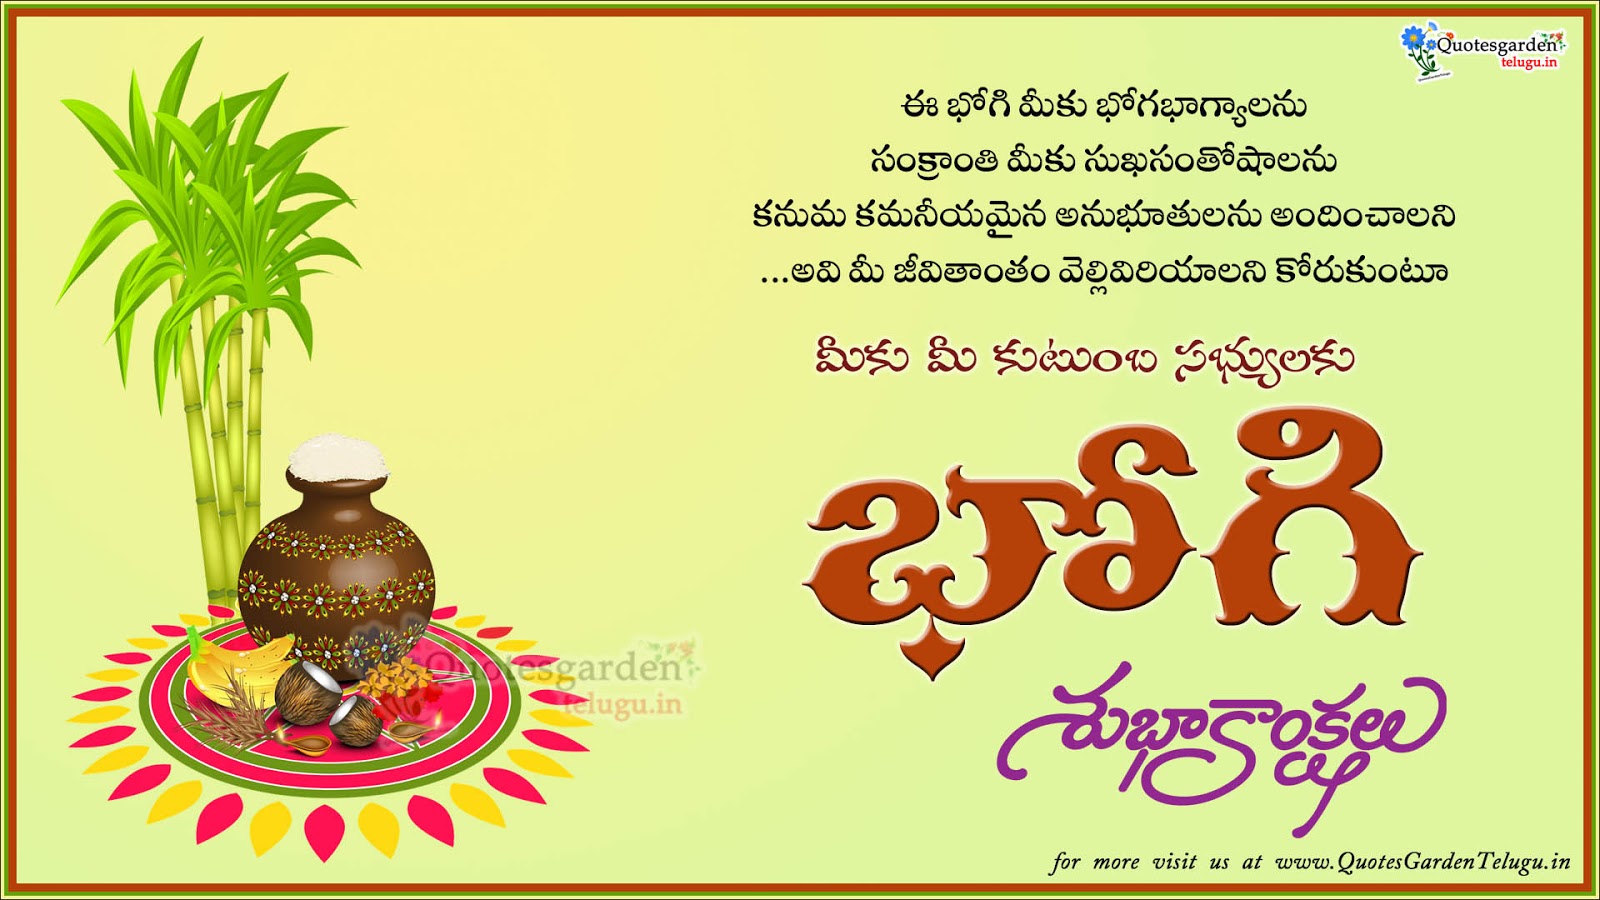 Bhogi Festival Greetings in Telugu - Bhogi telugu images hd ...